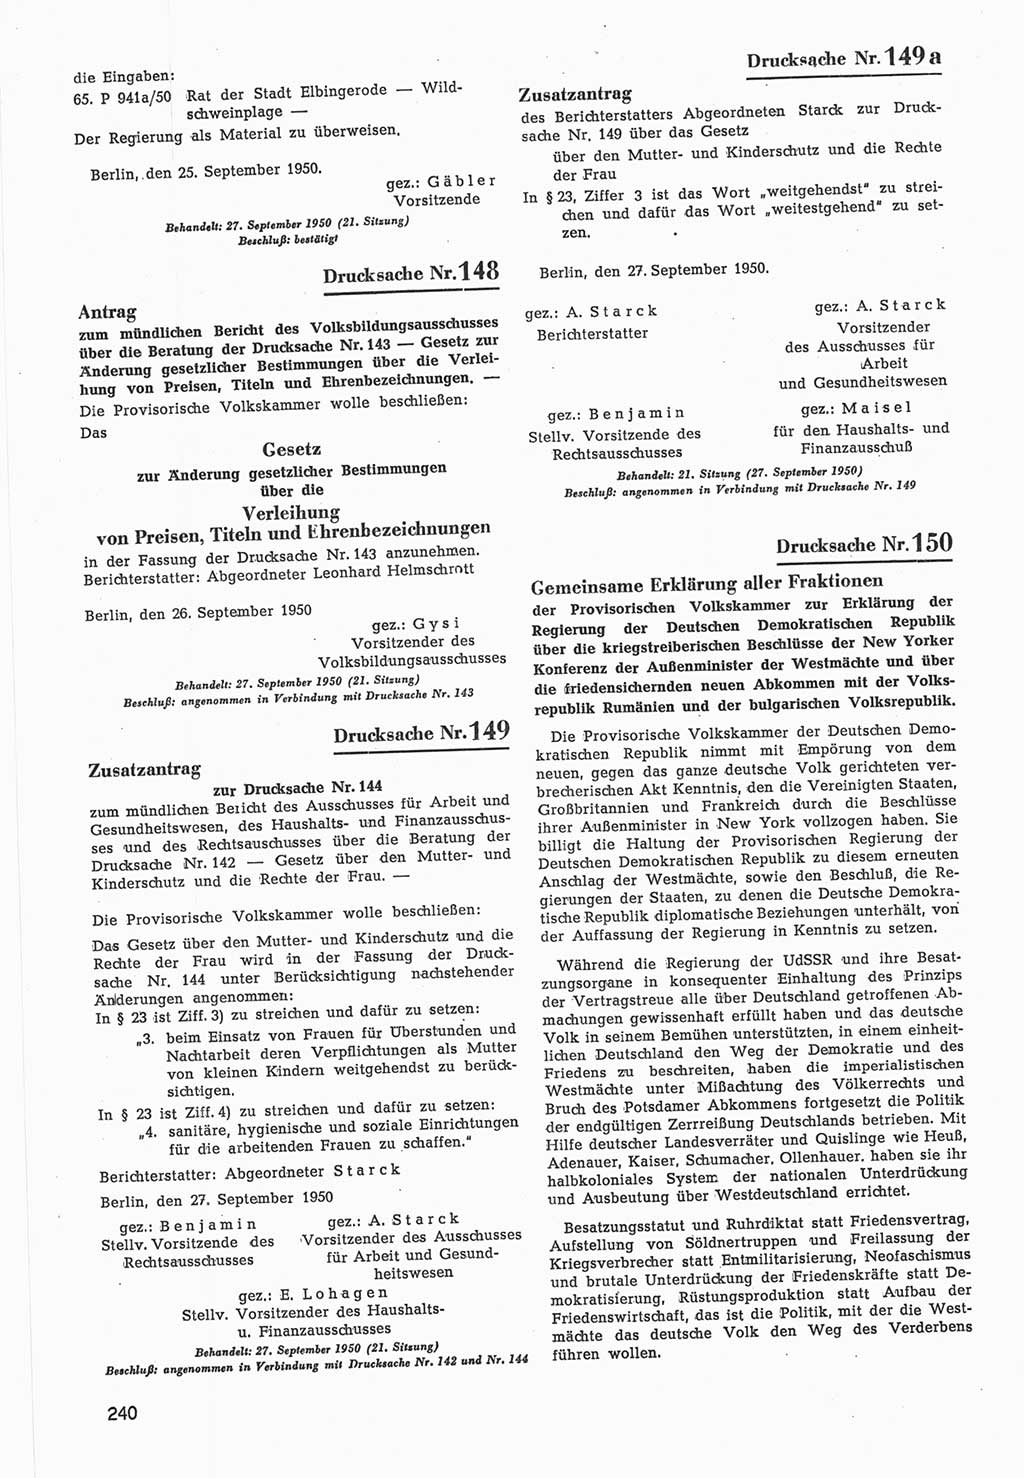 Provisorische Volkskammer (VK) der Deutschen Demokratischen Republik (DDR) 1949-1950, Dokument 842 (Prov. VK DDR 1949-1950, Dok. 842)